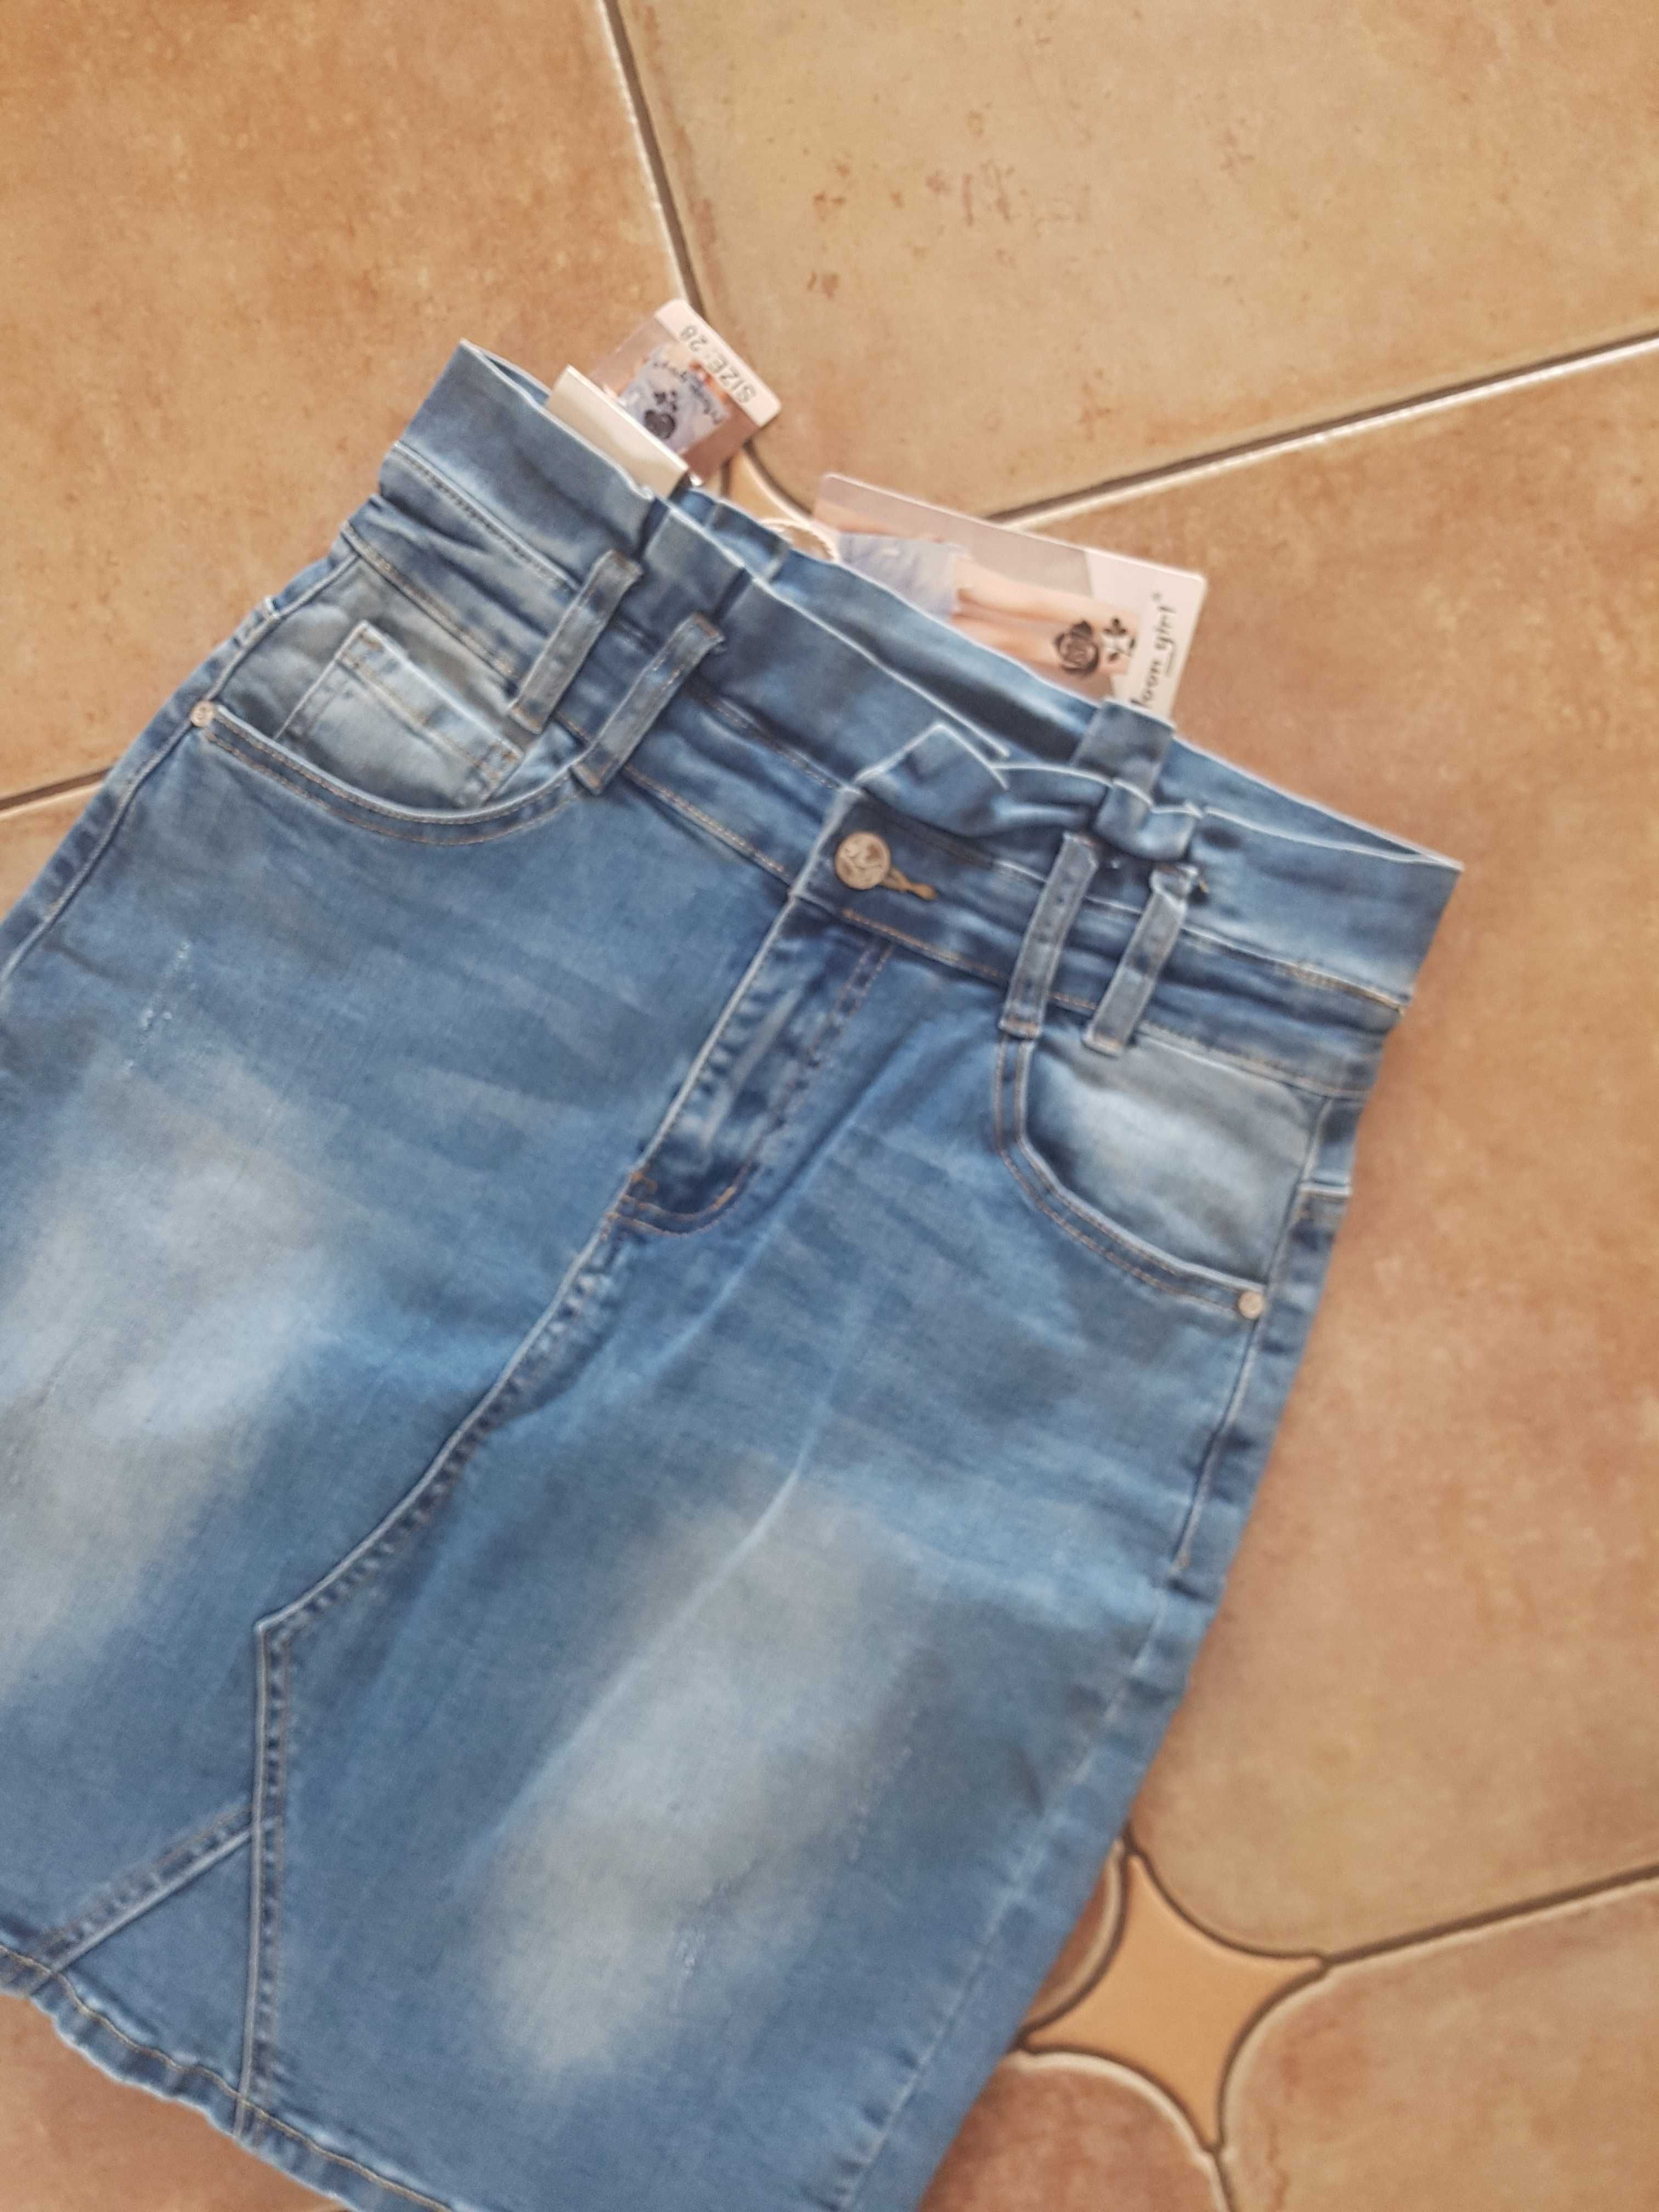 Spódnica jeansowa wyższy stan 28 S S/M 36/38